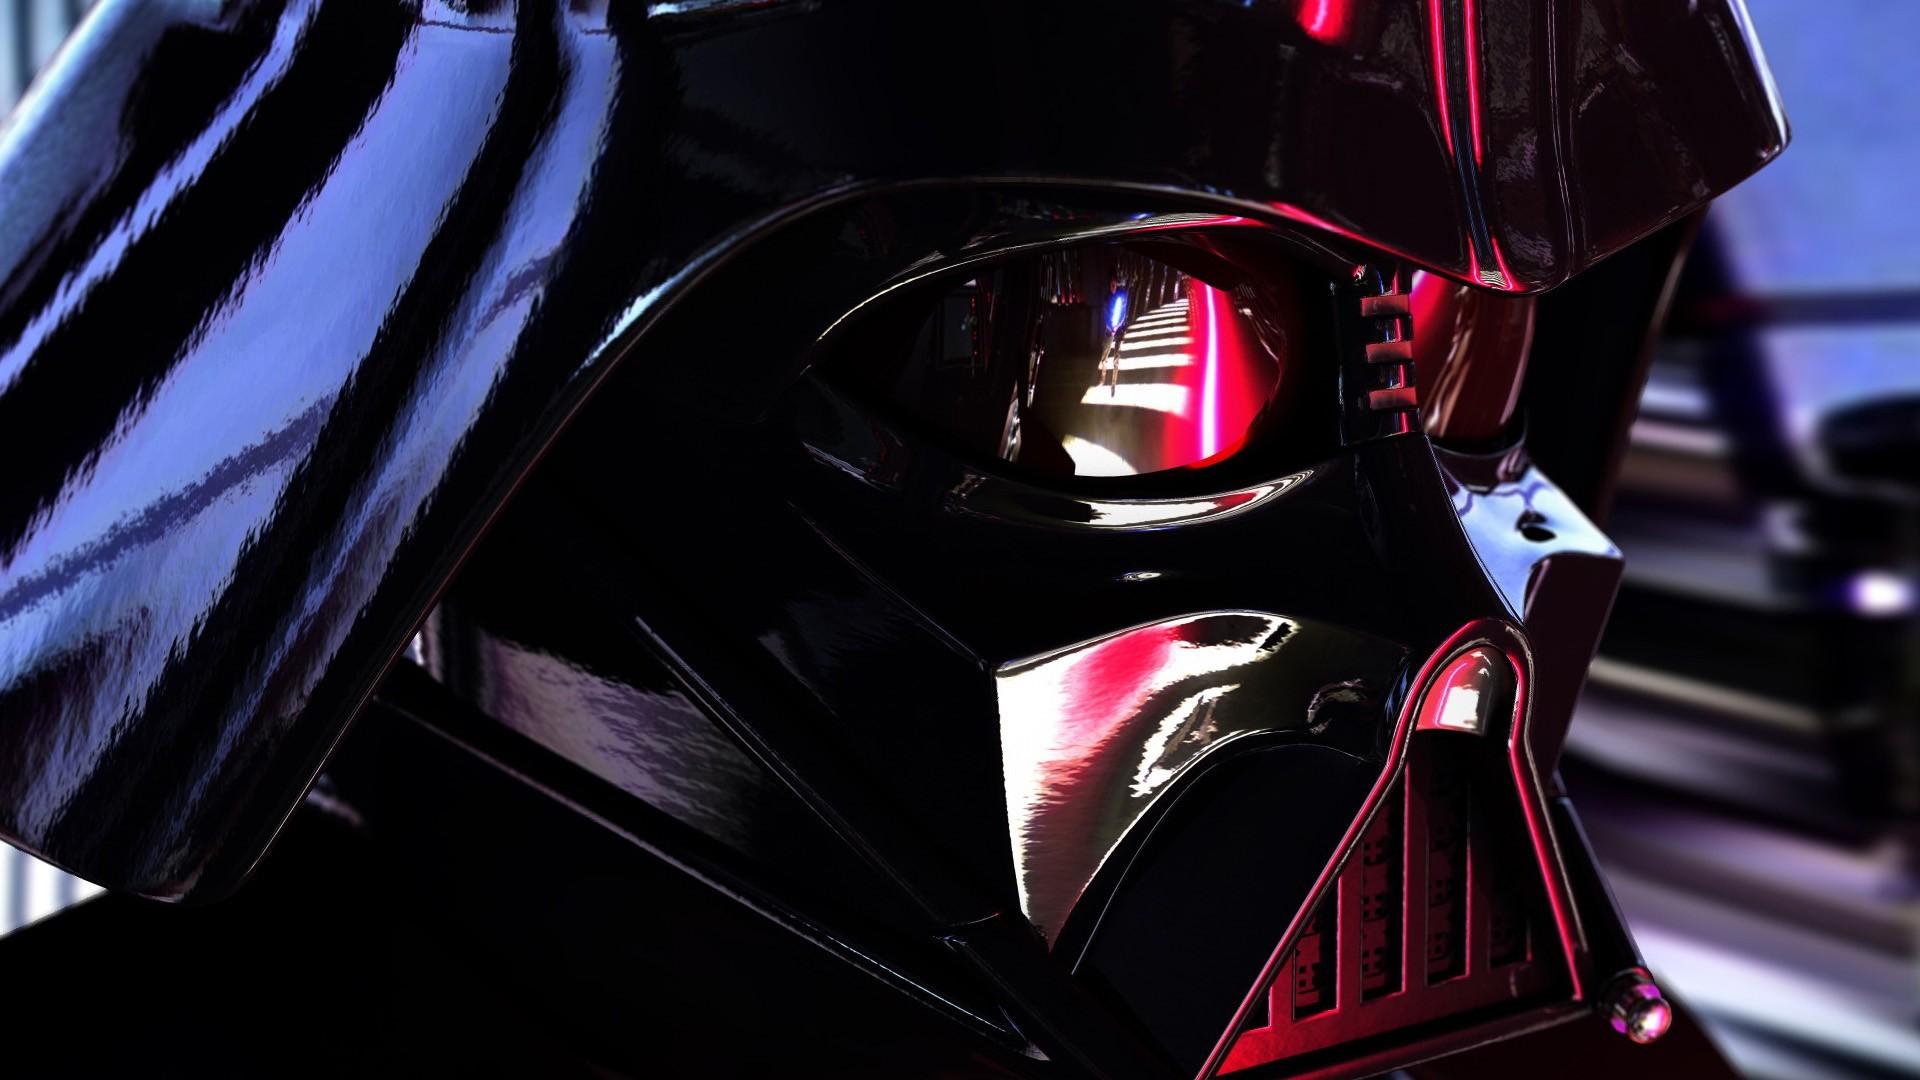 Darth Vader's Mask Close Up, Full HD 1920x1080 1080p